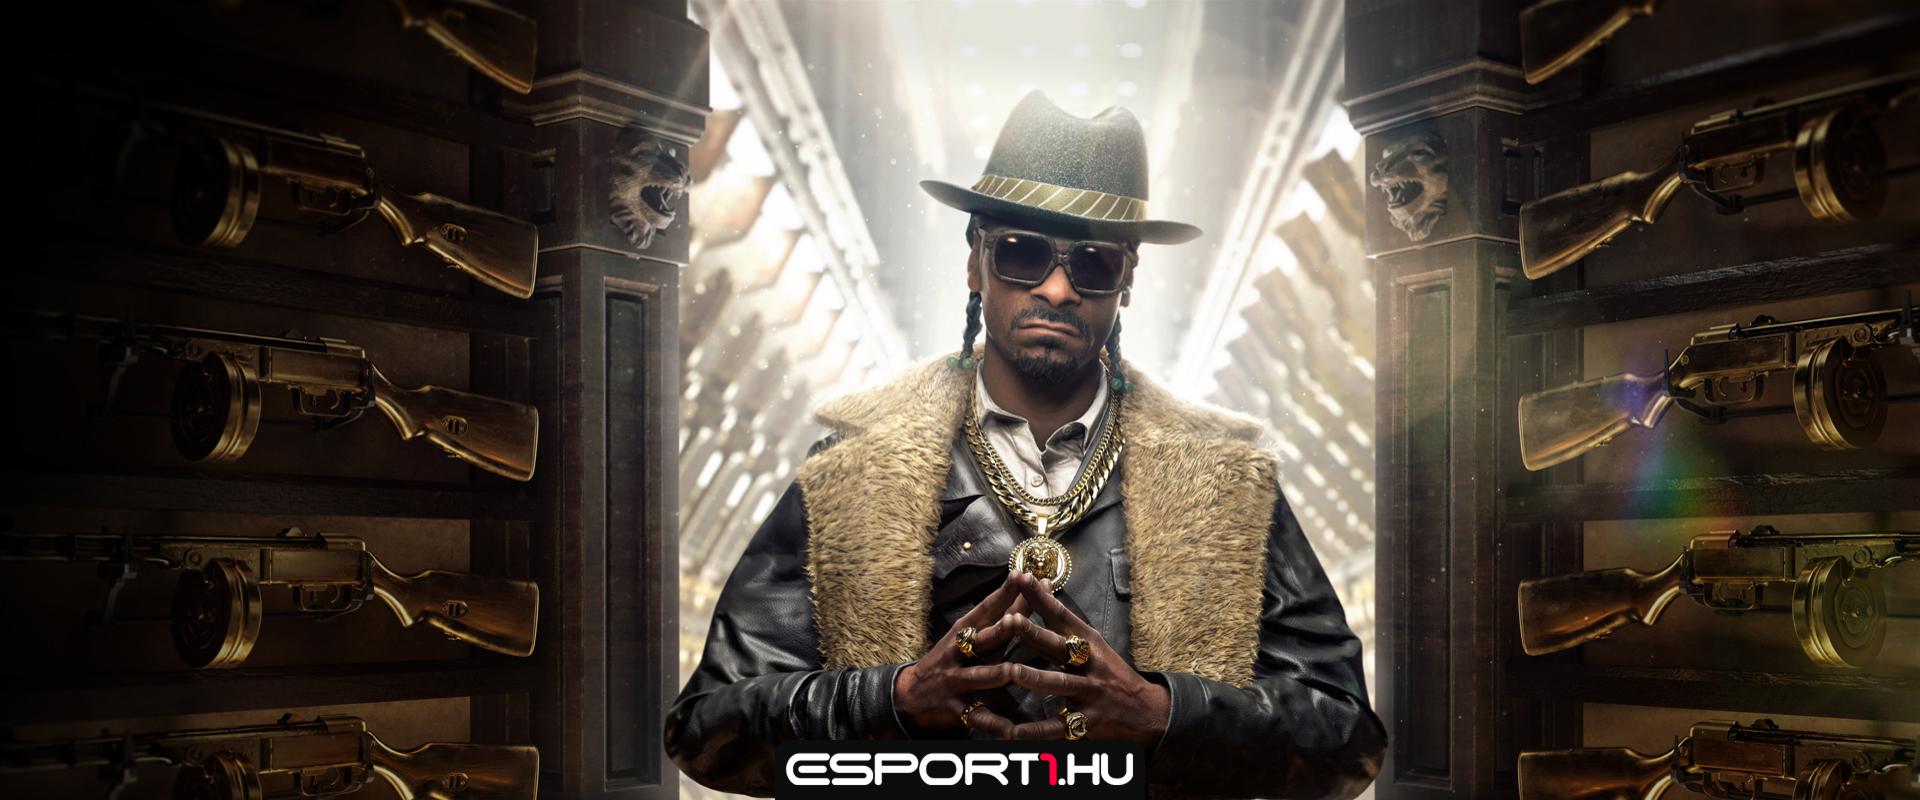 Megérkezett a Call of Duty-ba a Snoop Dogg bundle!